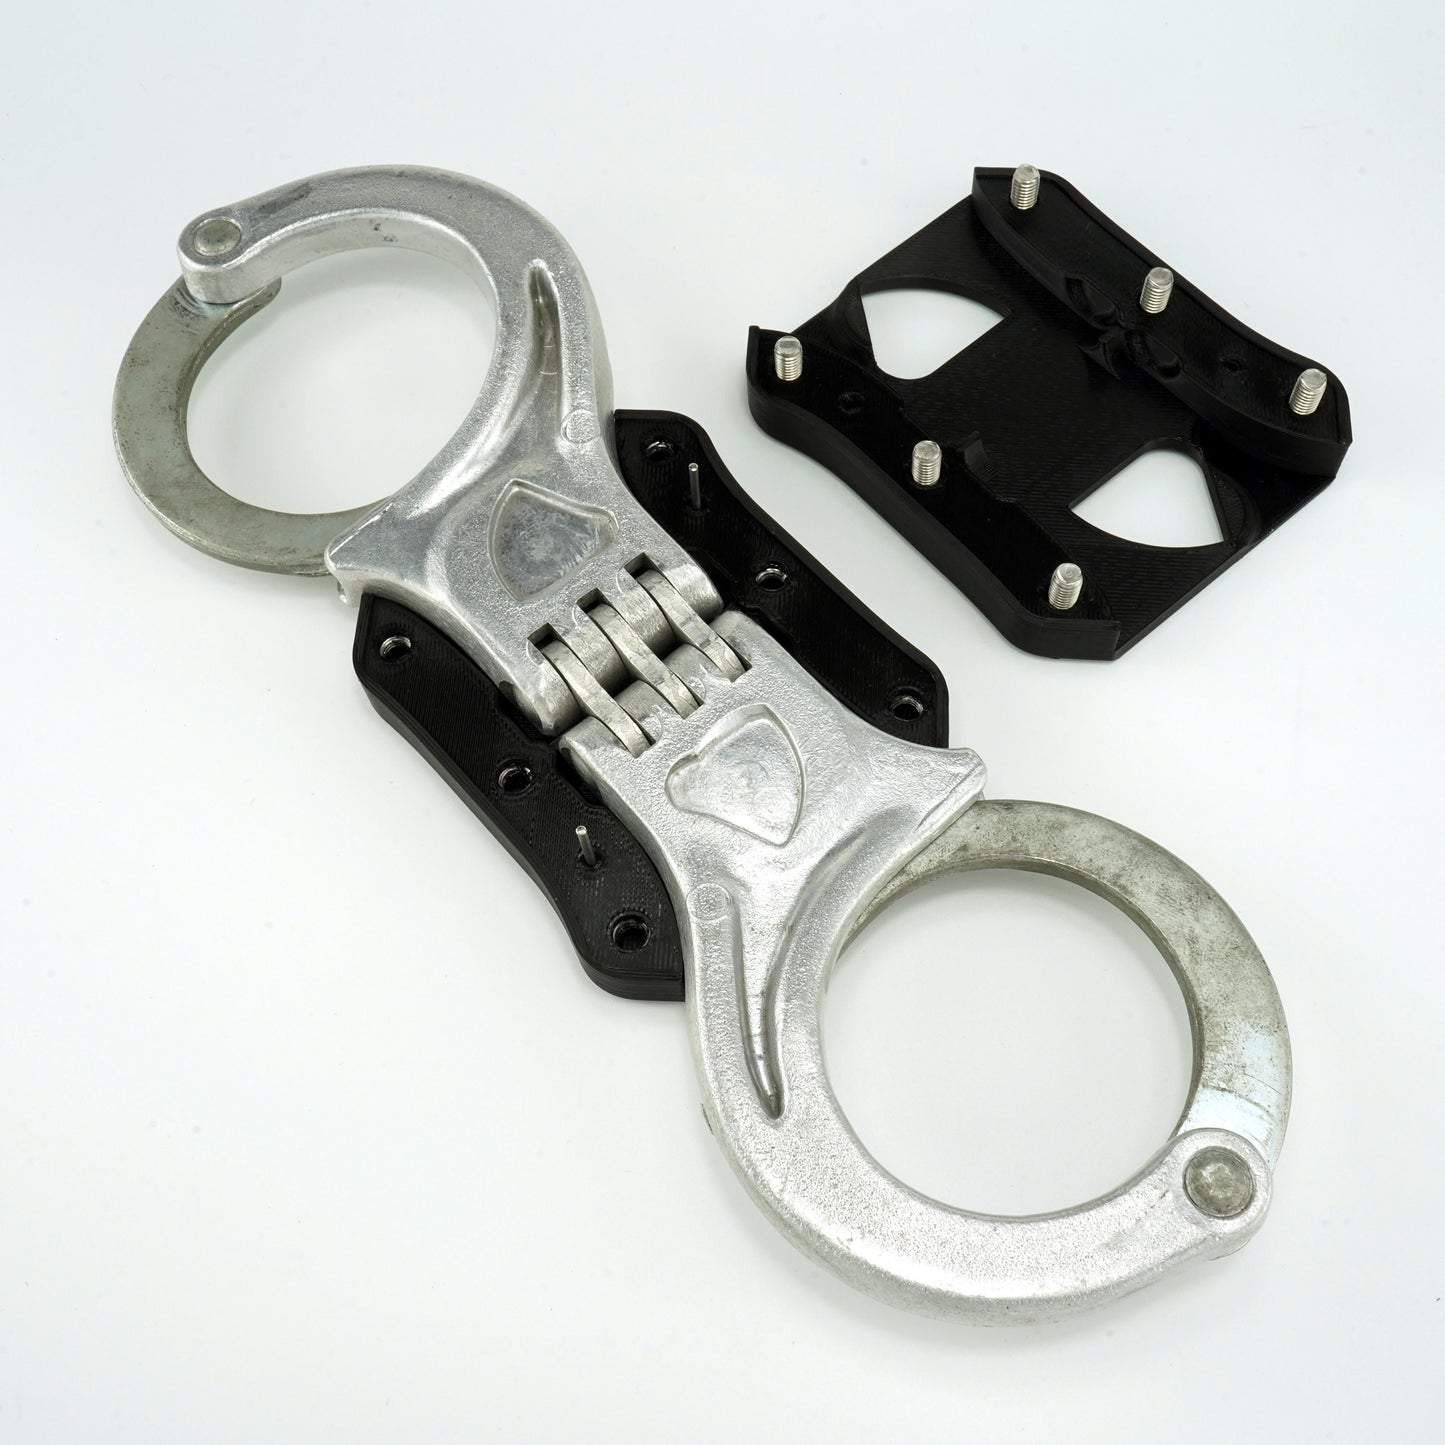 MakeItRigid stiffener for handcuffs "Schutzmarke Deutsche Polizei"